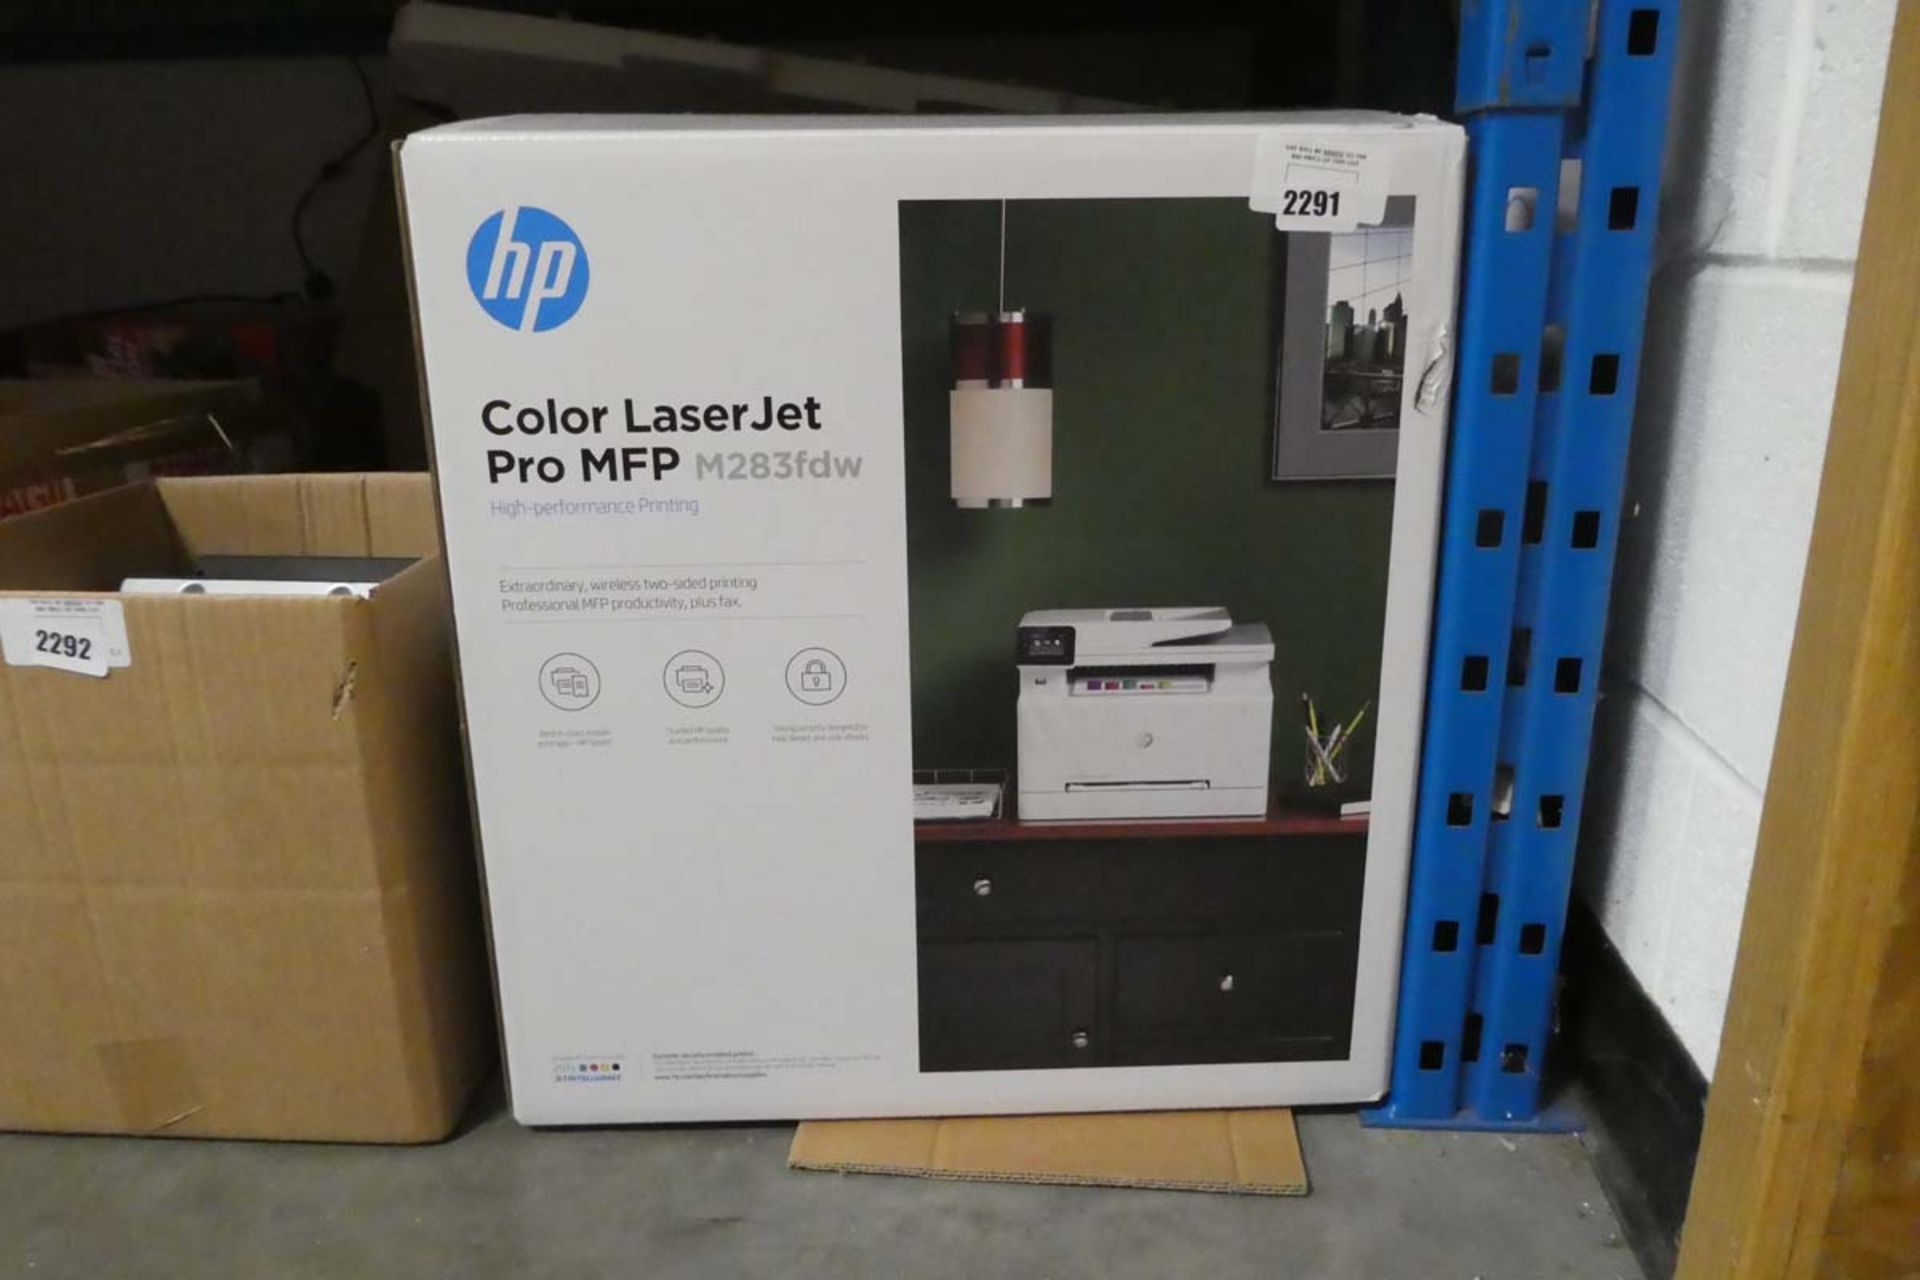 HP colour laserjet pro MFP printer in box